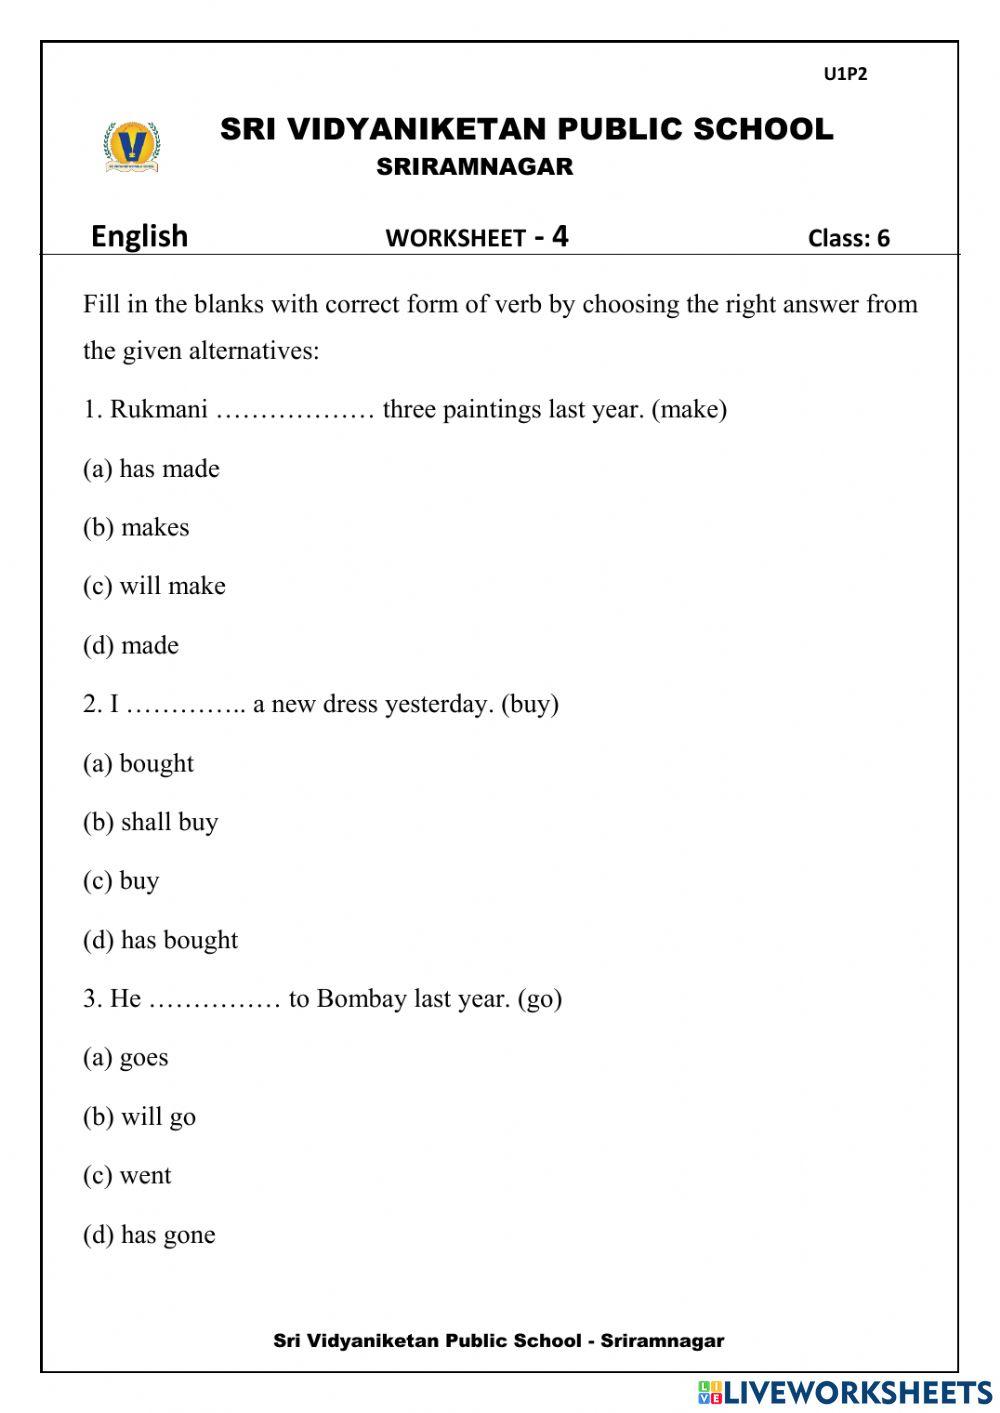 6th english ws 4 tenses